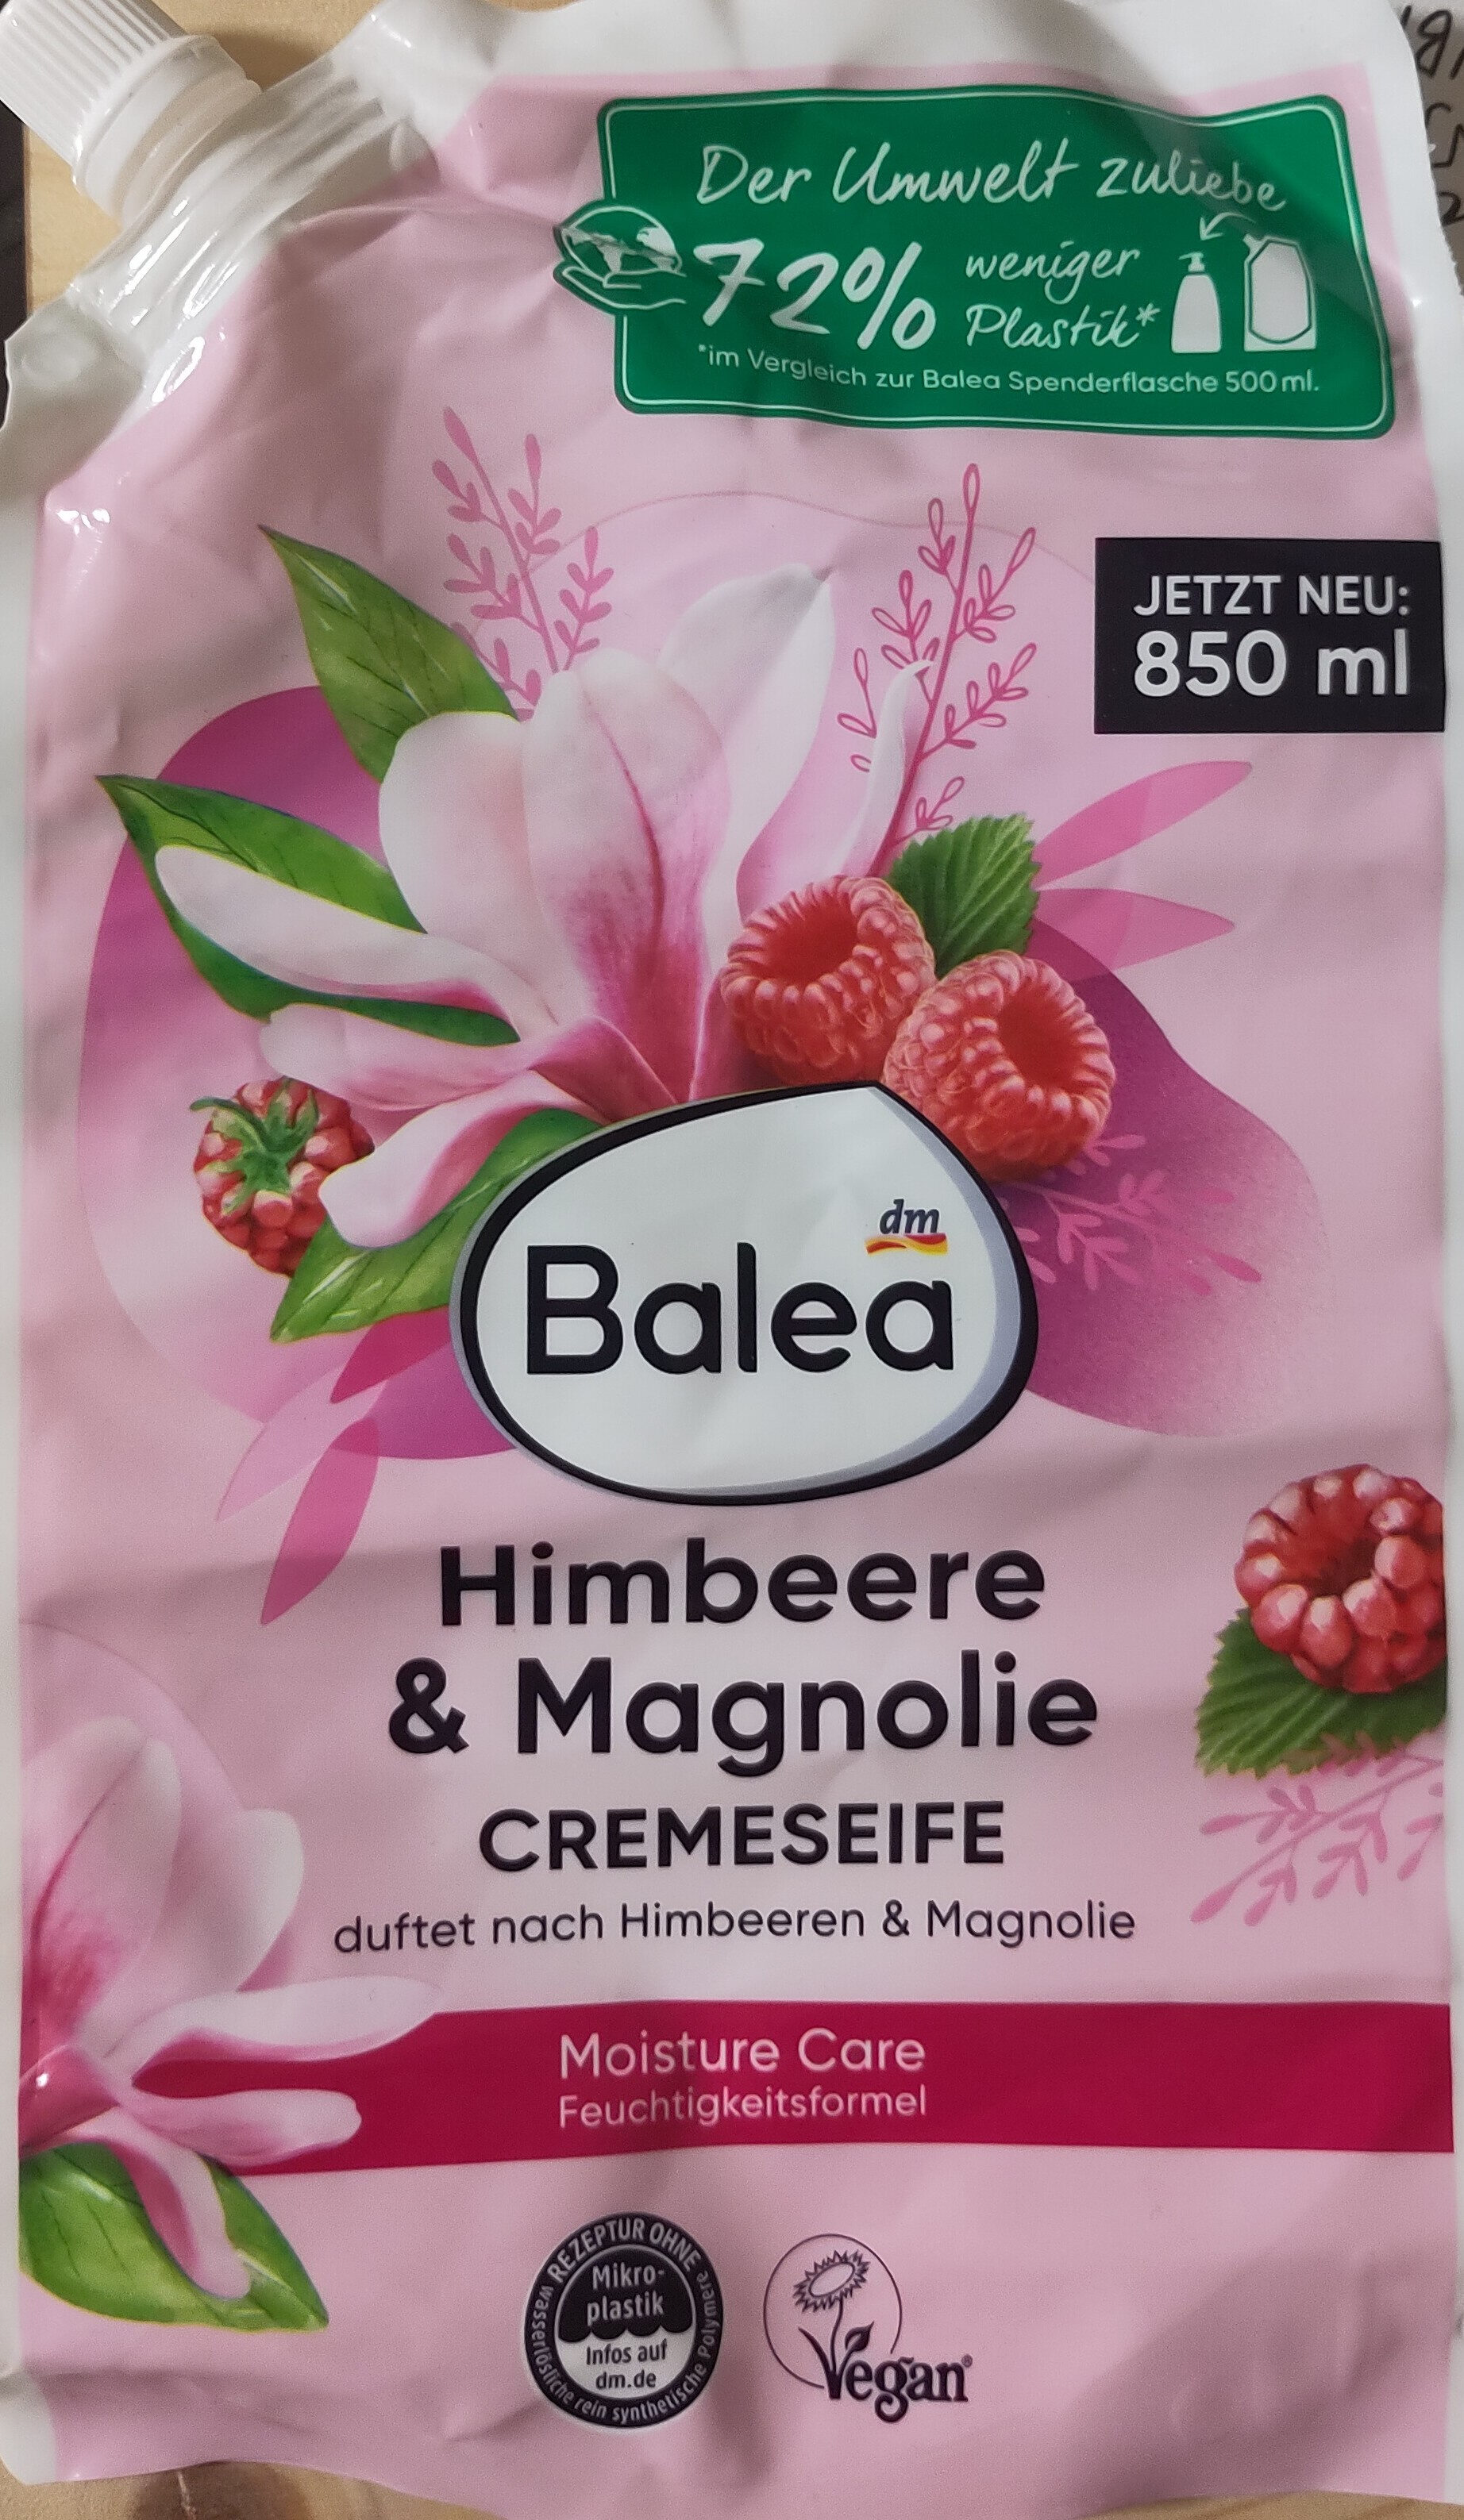 himbeere & magnolia cremeseife - Produkt - en